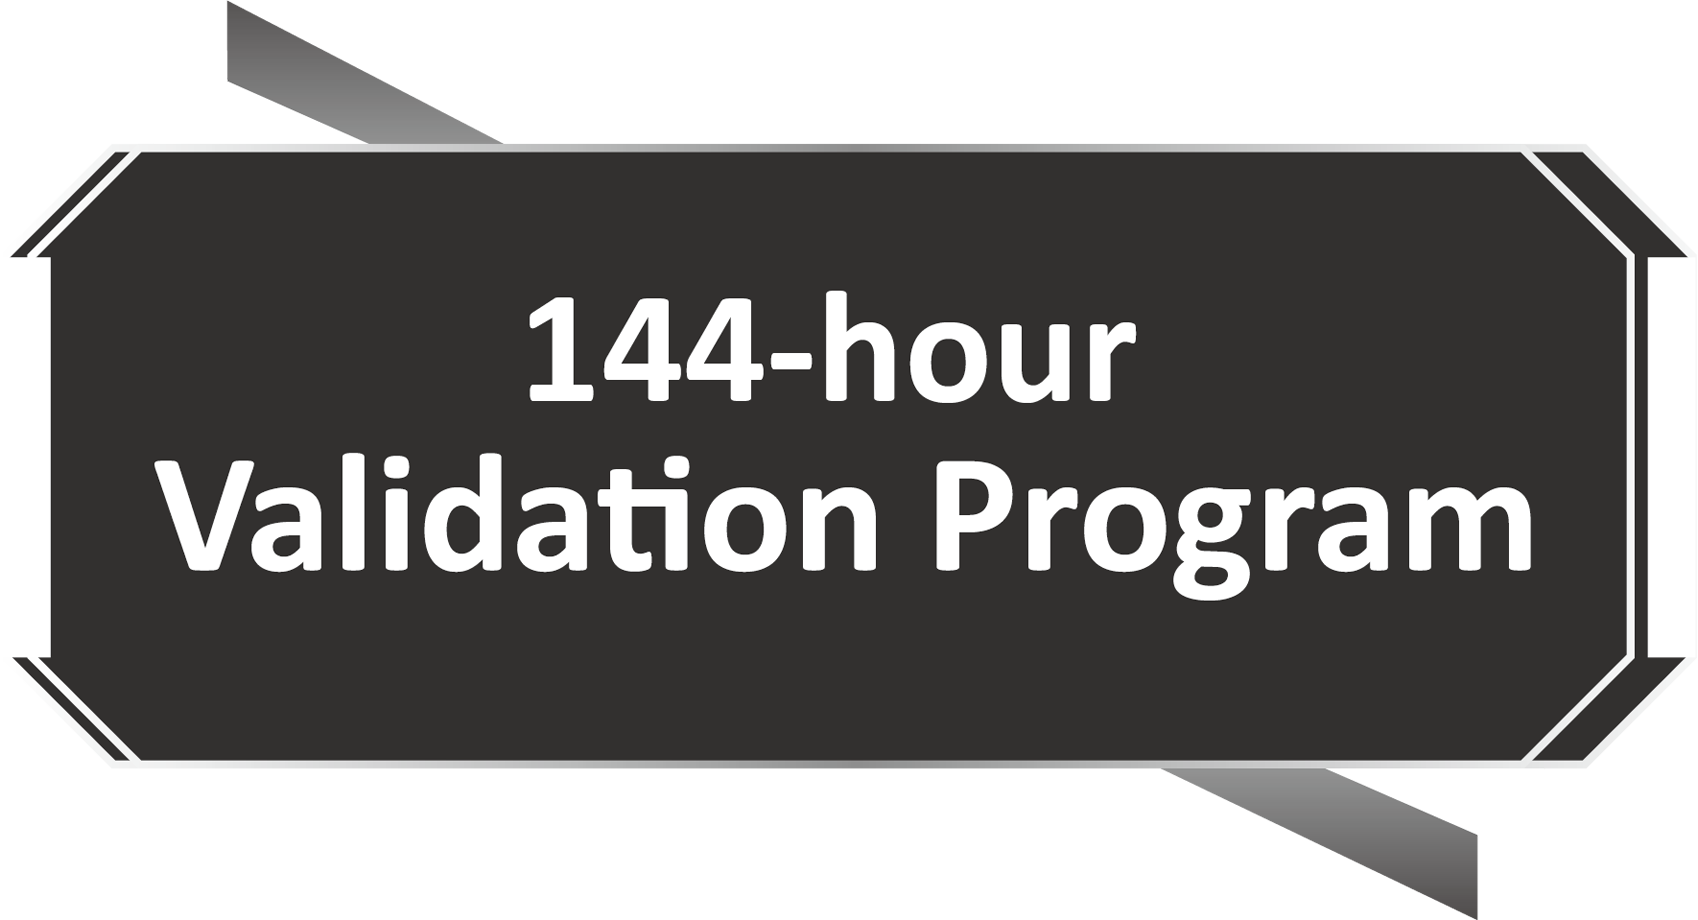 Programa de validación de 144 horas